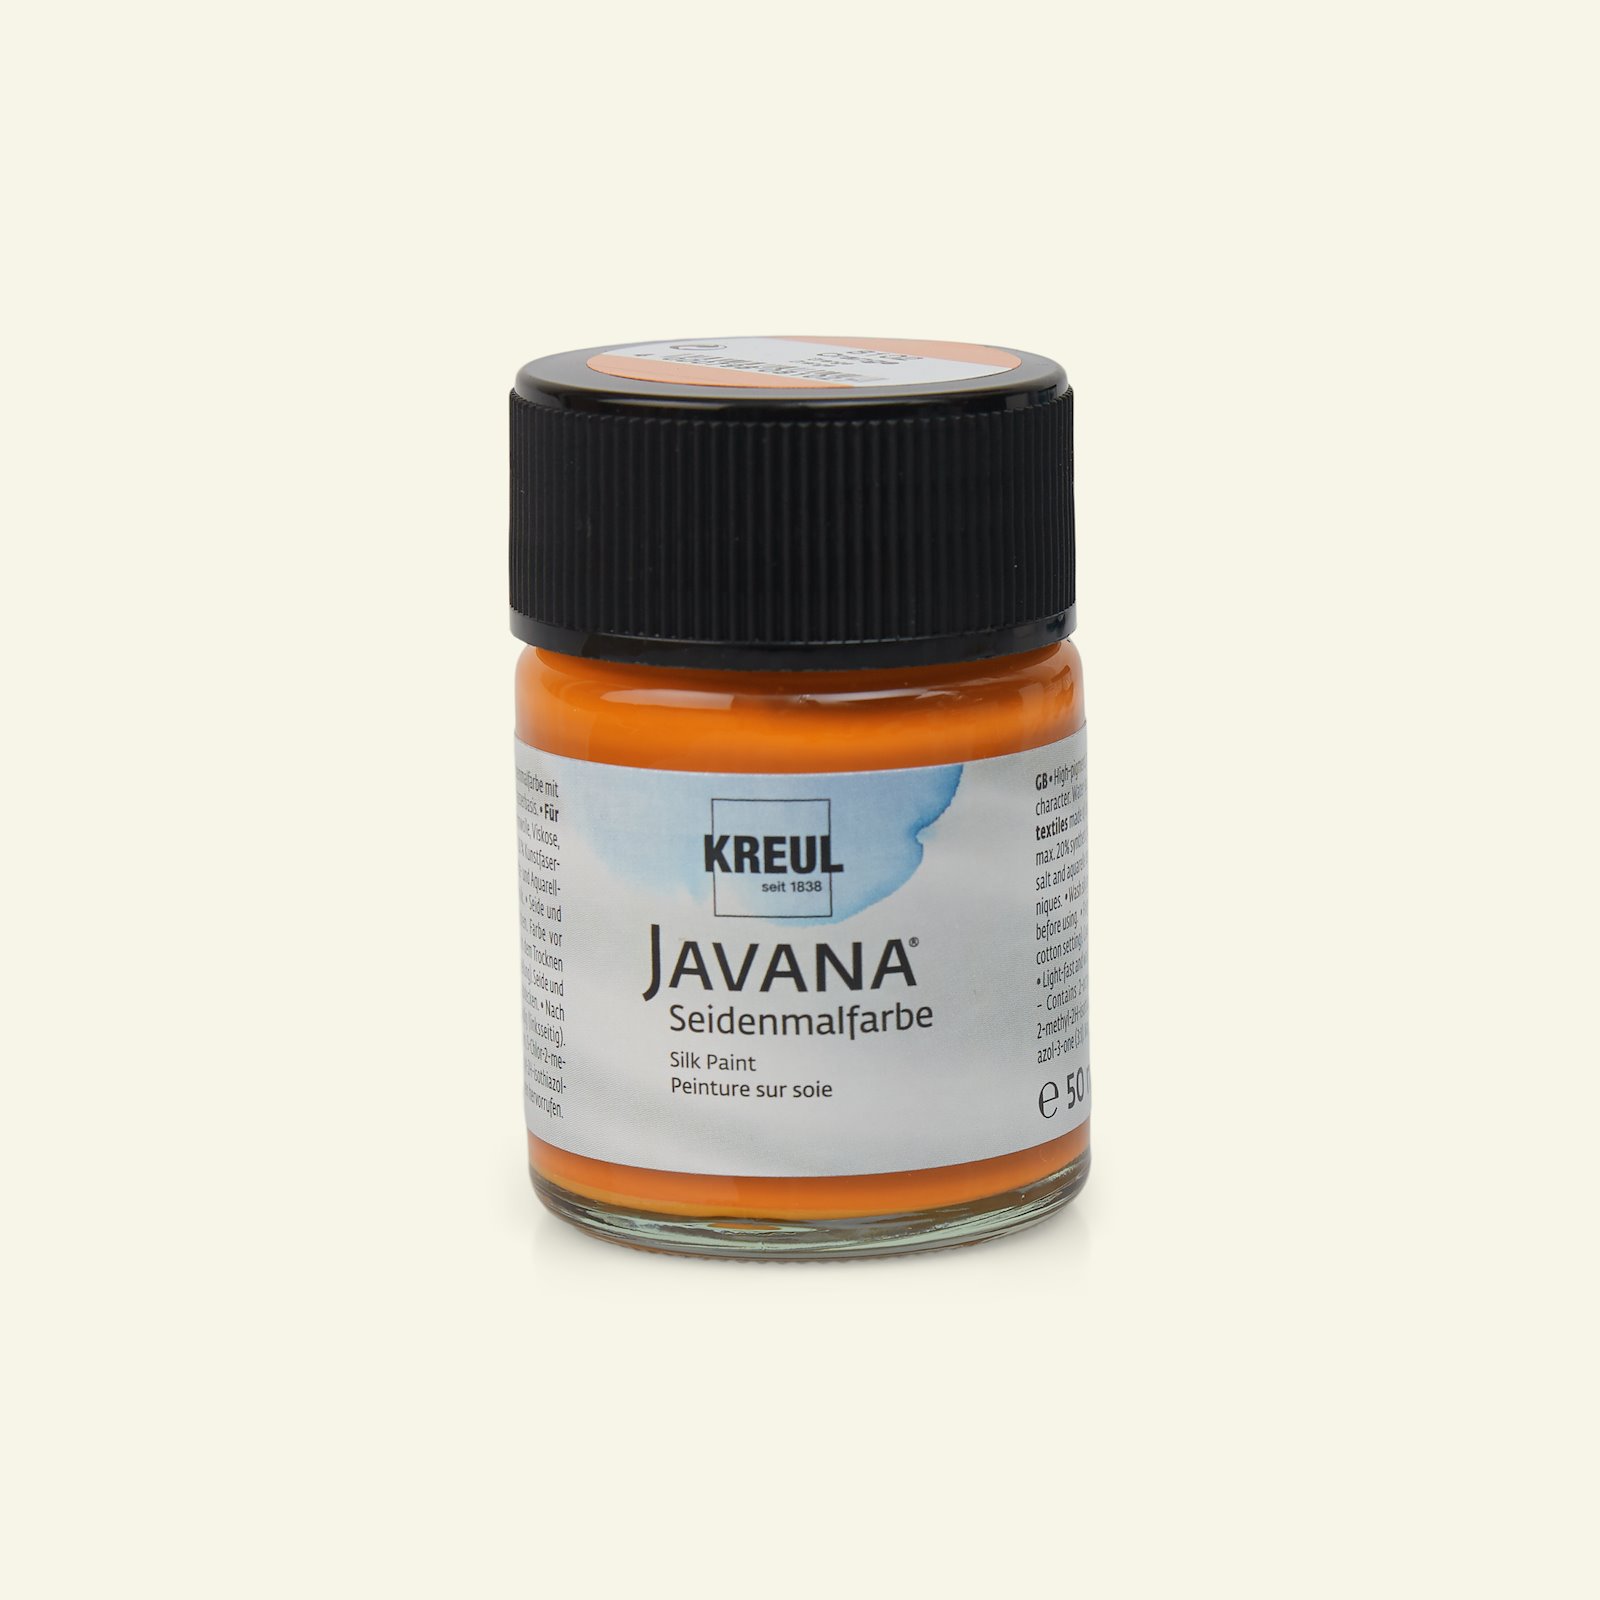 Javana sidenfärg, orange, 50ml 29637_pack_b